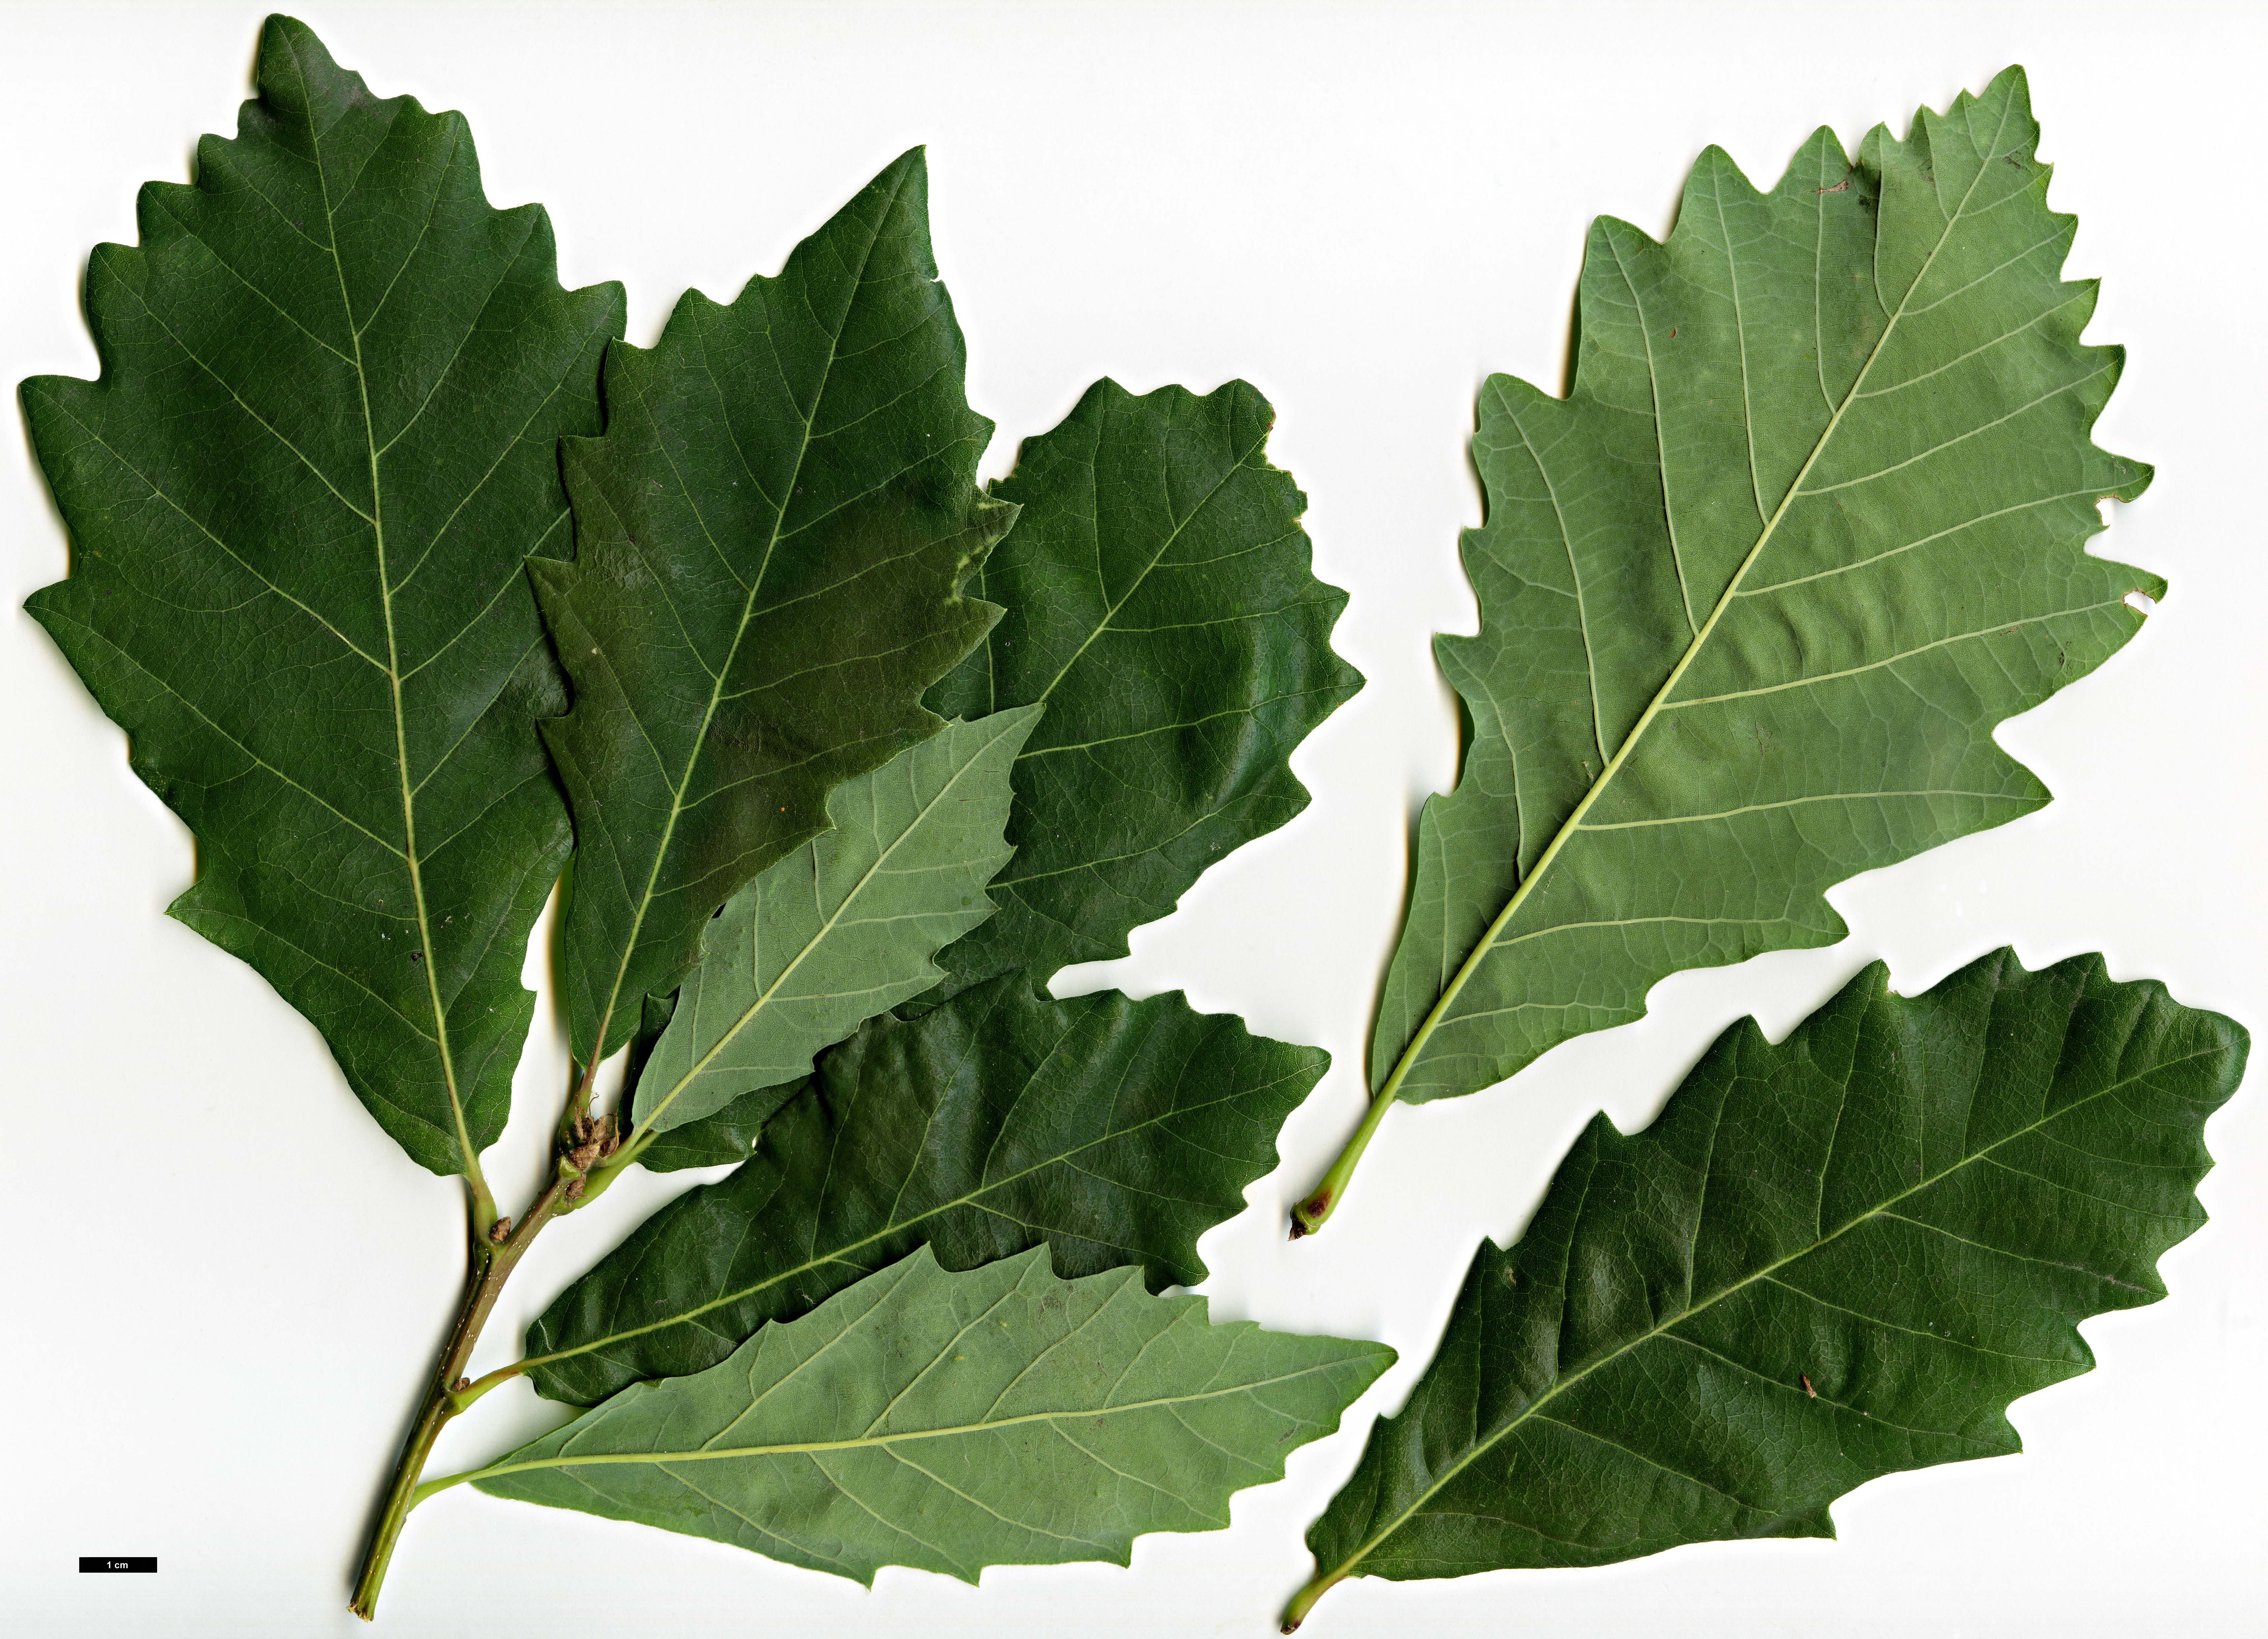 High resolution image: Family: Fagaceae - Genus: Quercus - Taxon: canariensis hybrid